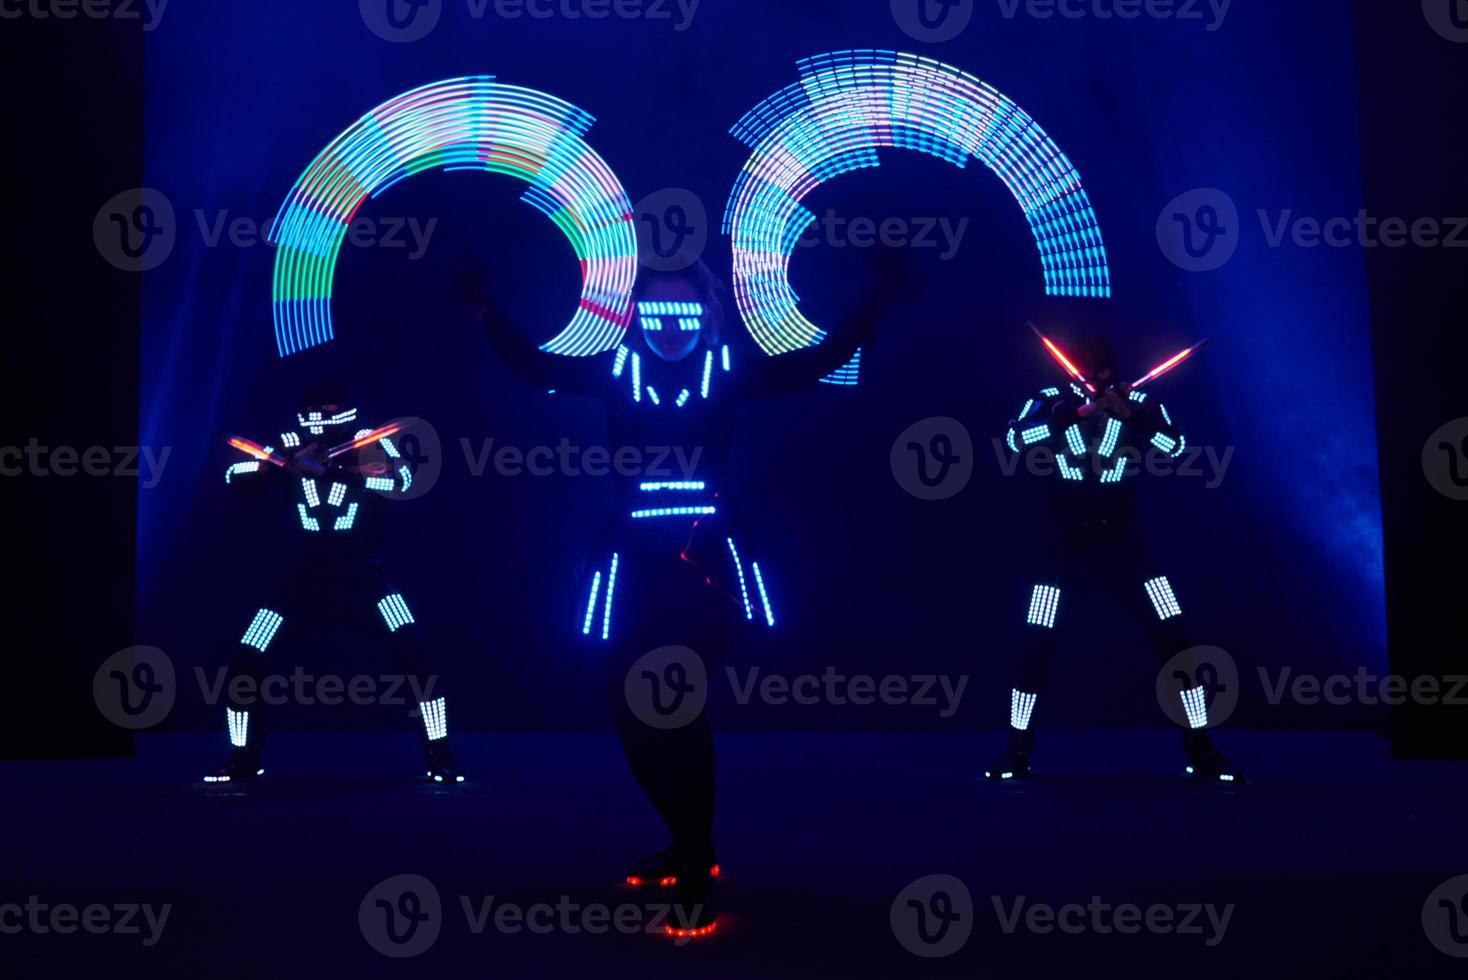 lasershow performance, dansers in led pakken met led lamp, zeer mooie nachtclub performance, party foto